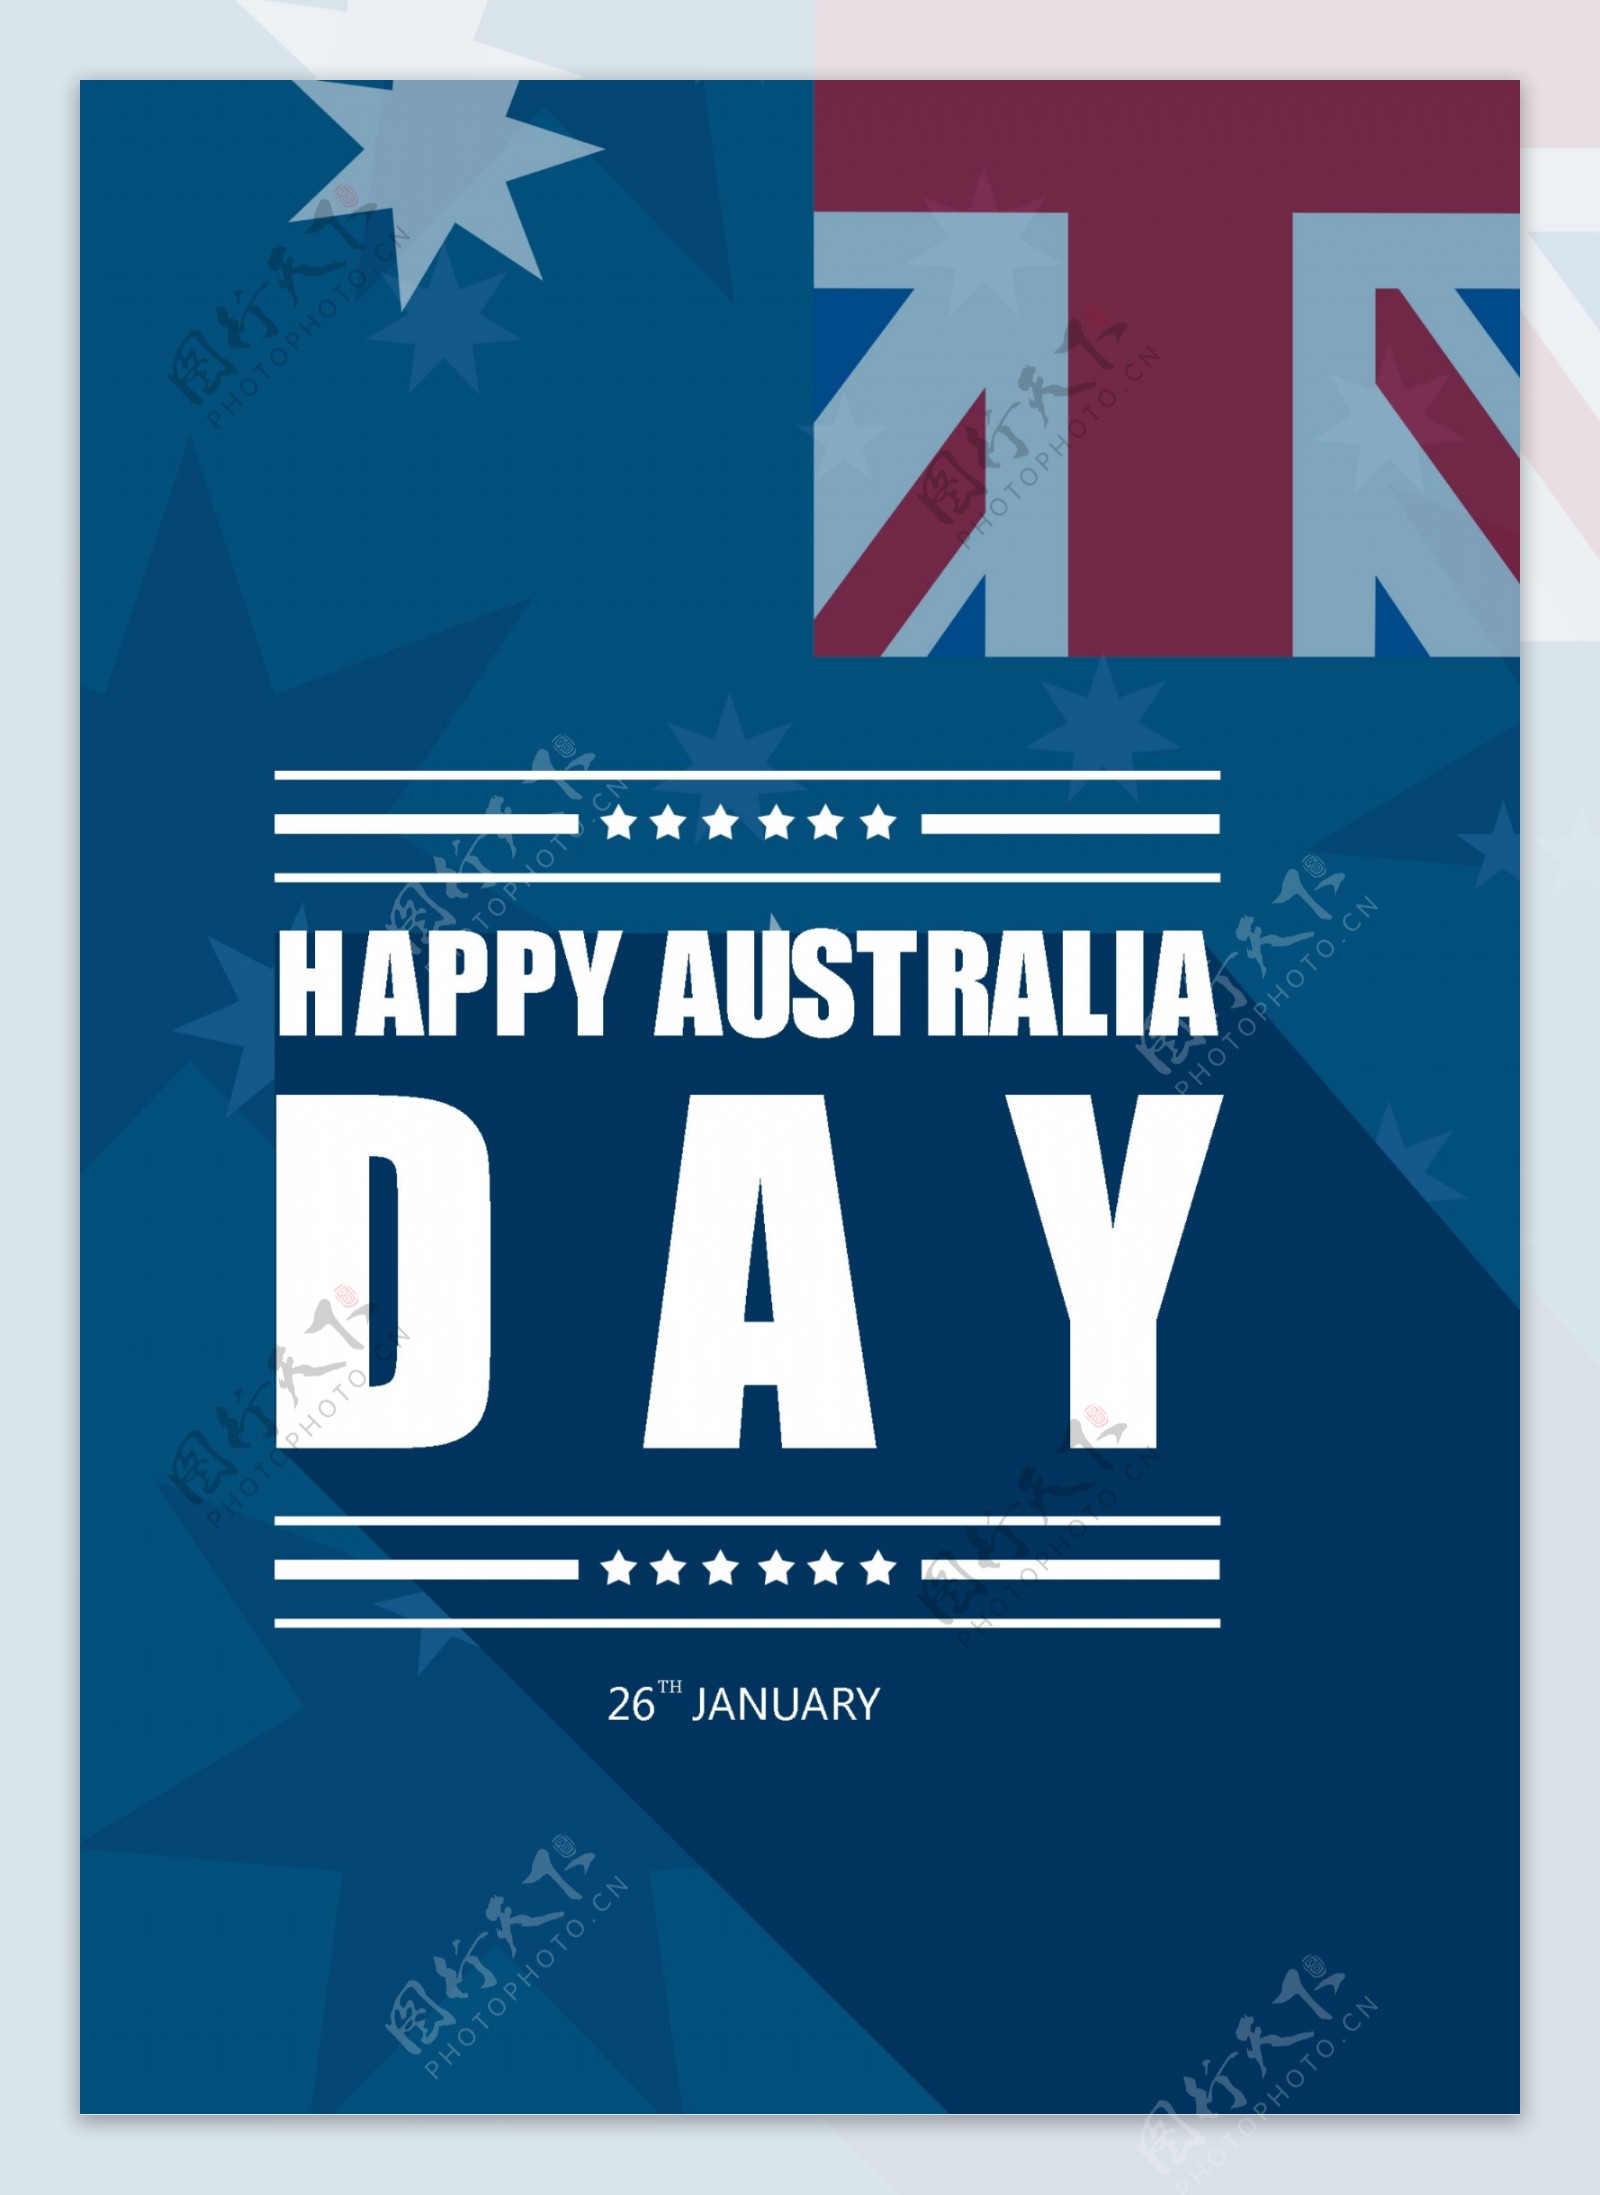 蓝色扁平化投影澳大利亚日庆祝海报